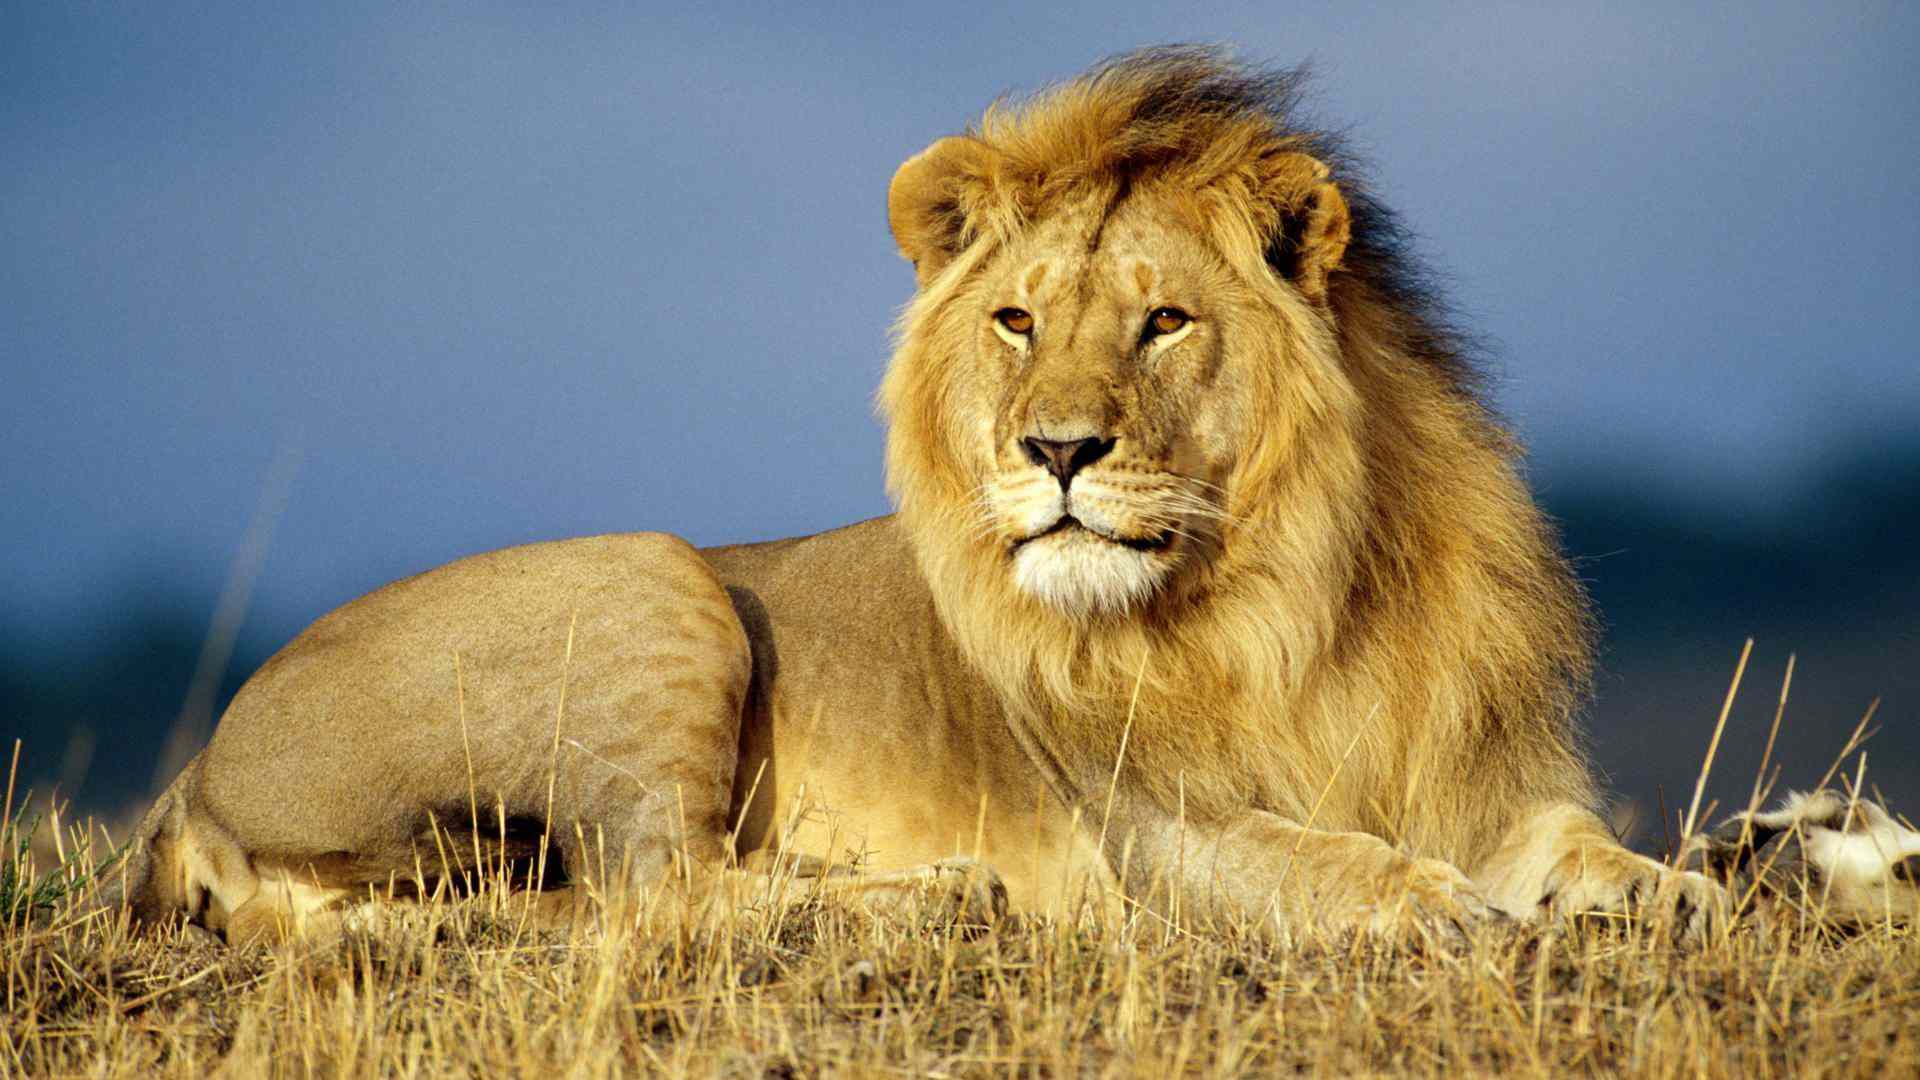 Mobile Desktop Background Hd Images African Lion